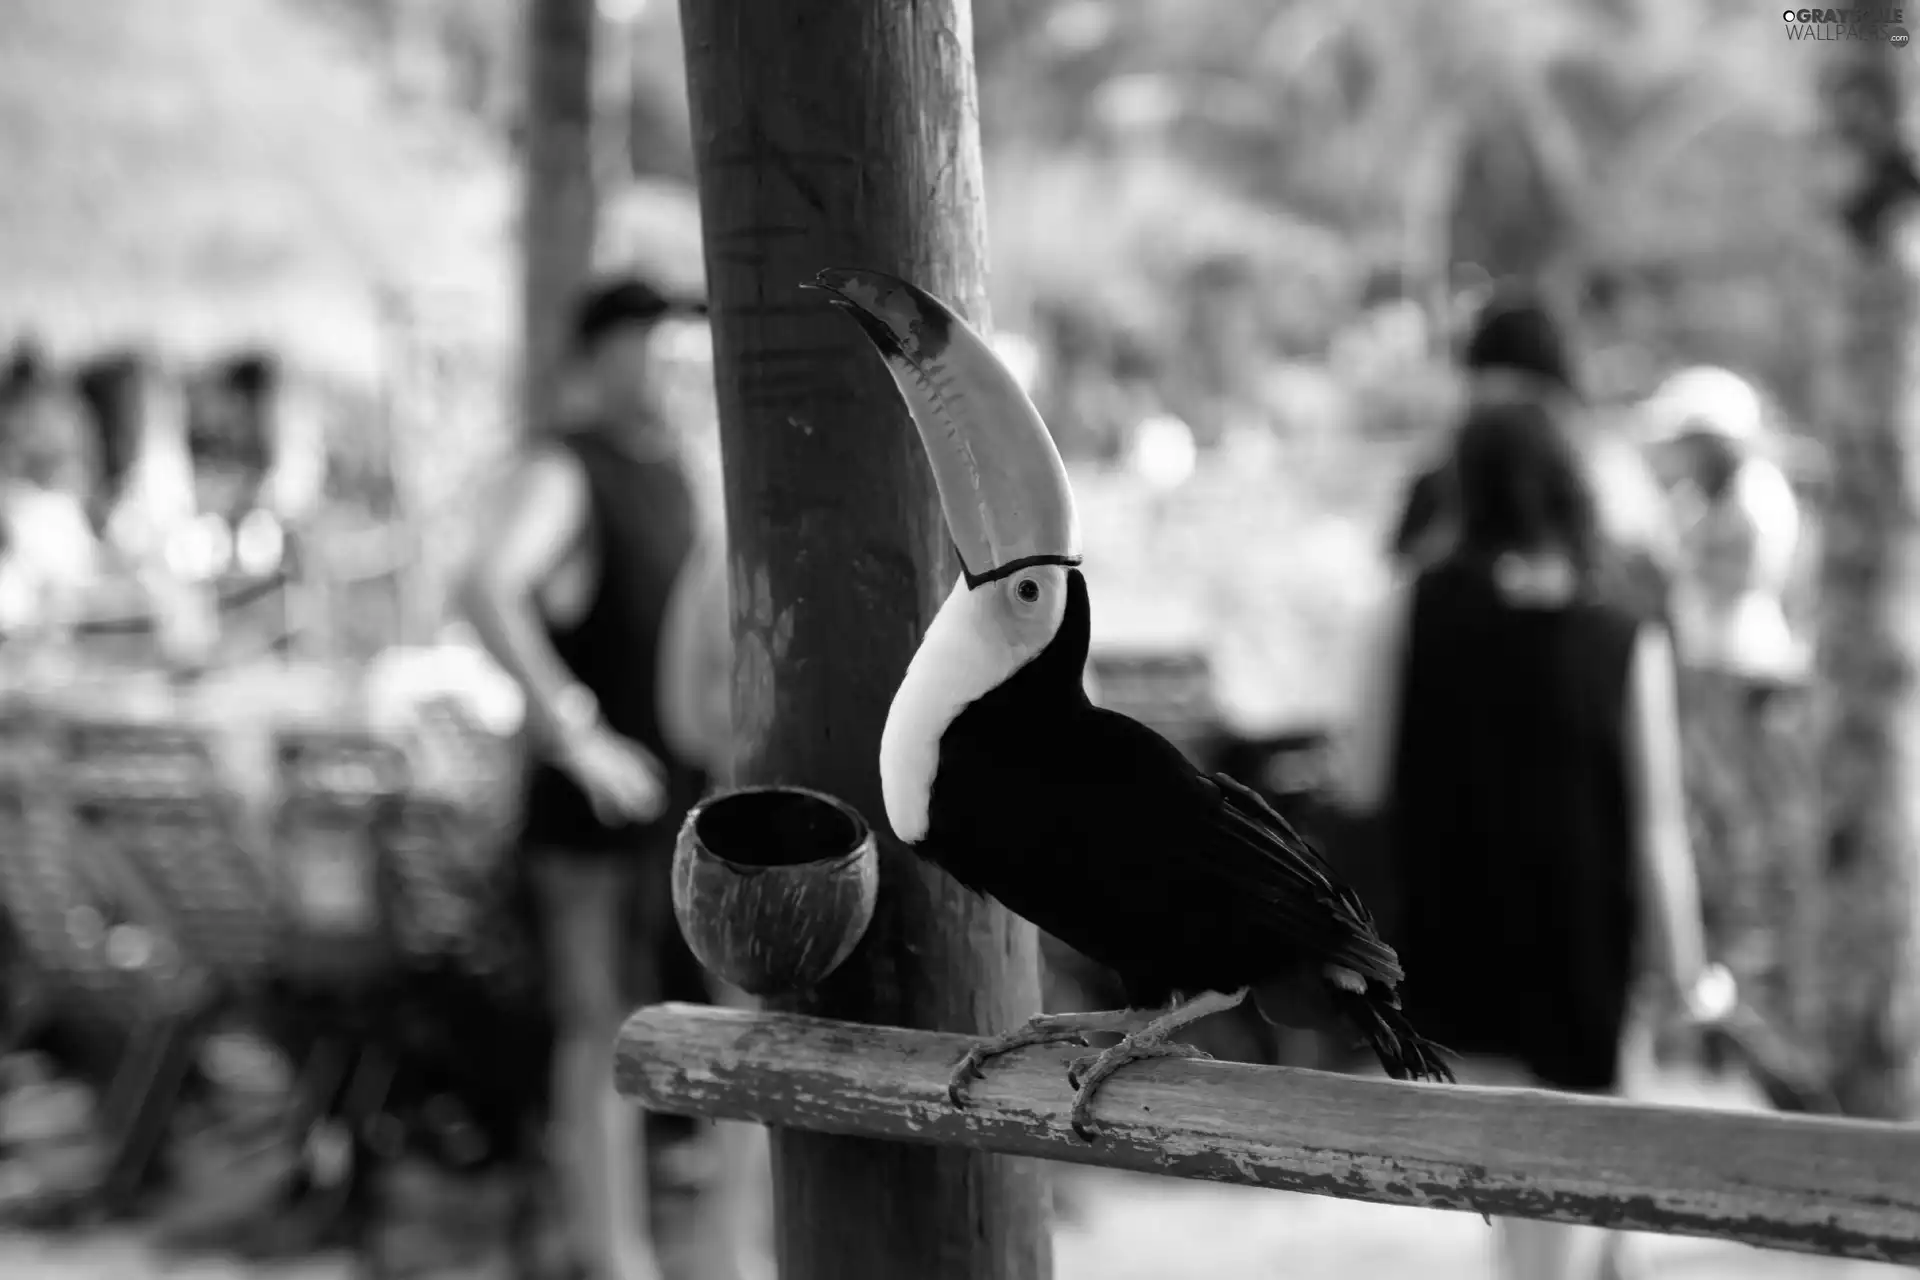 Toucan, Bird